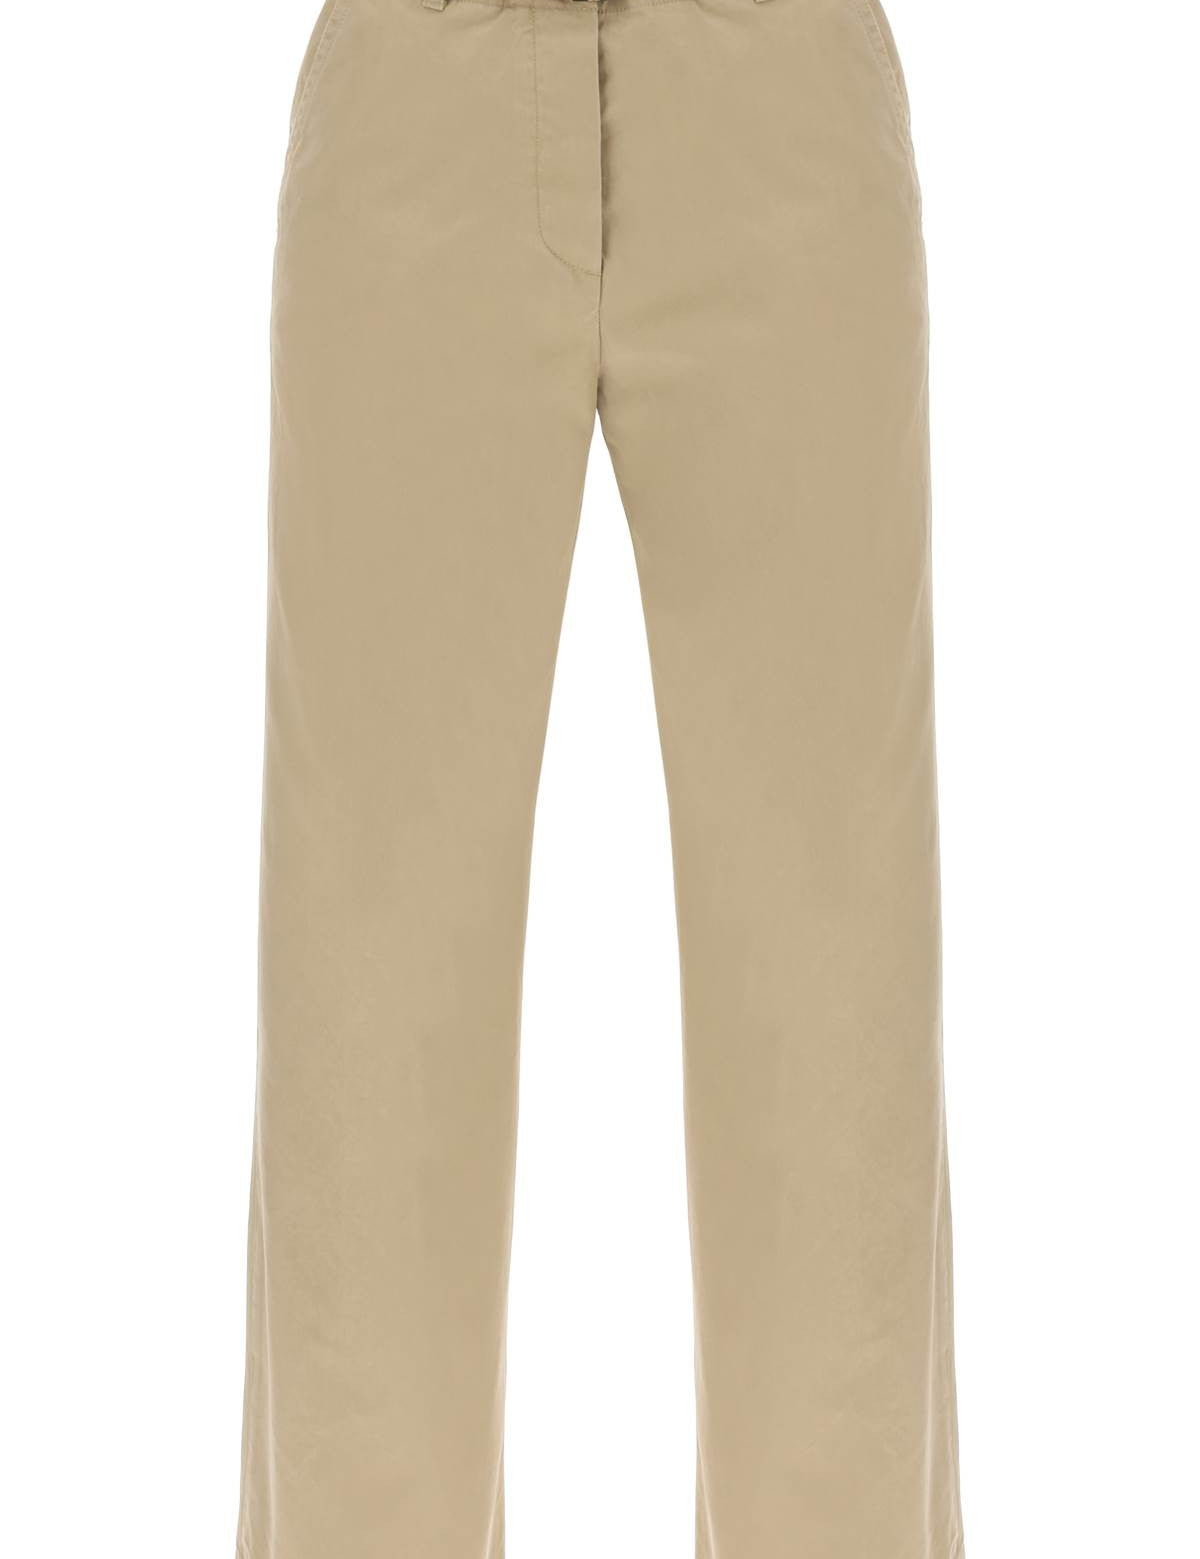 dries-van-noten-cotton-pants-with-belt.jpg